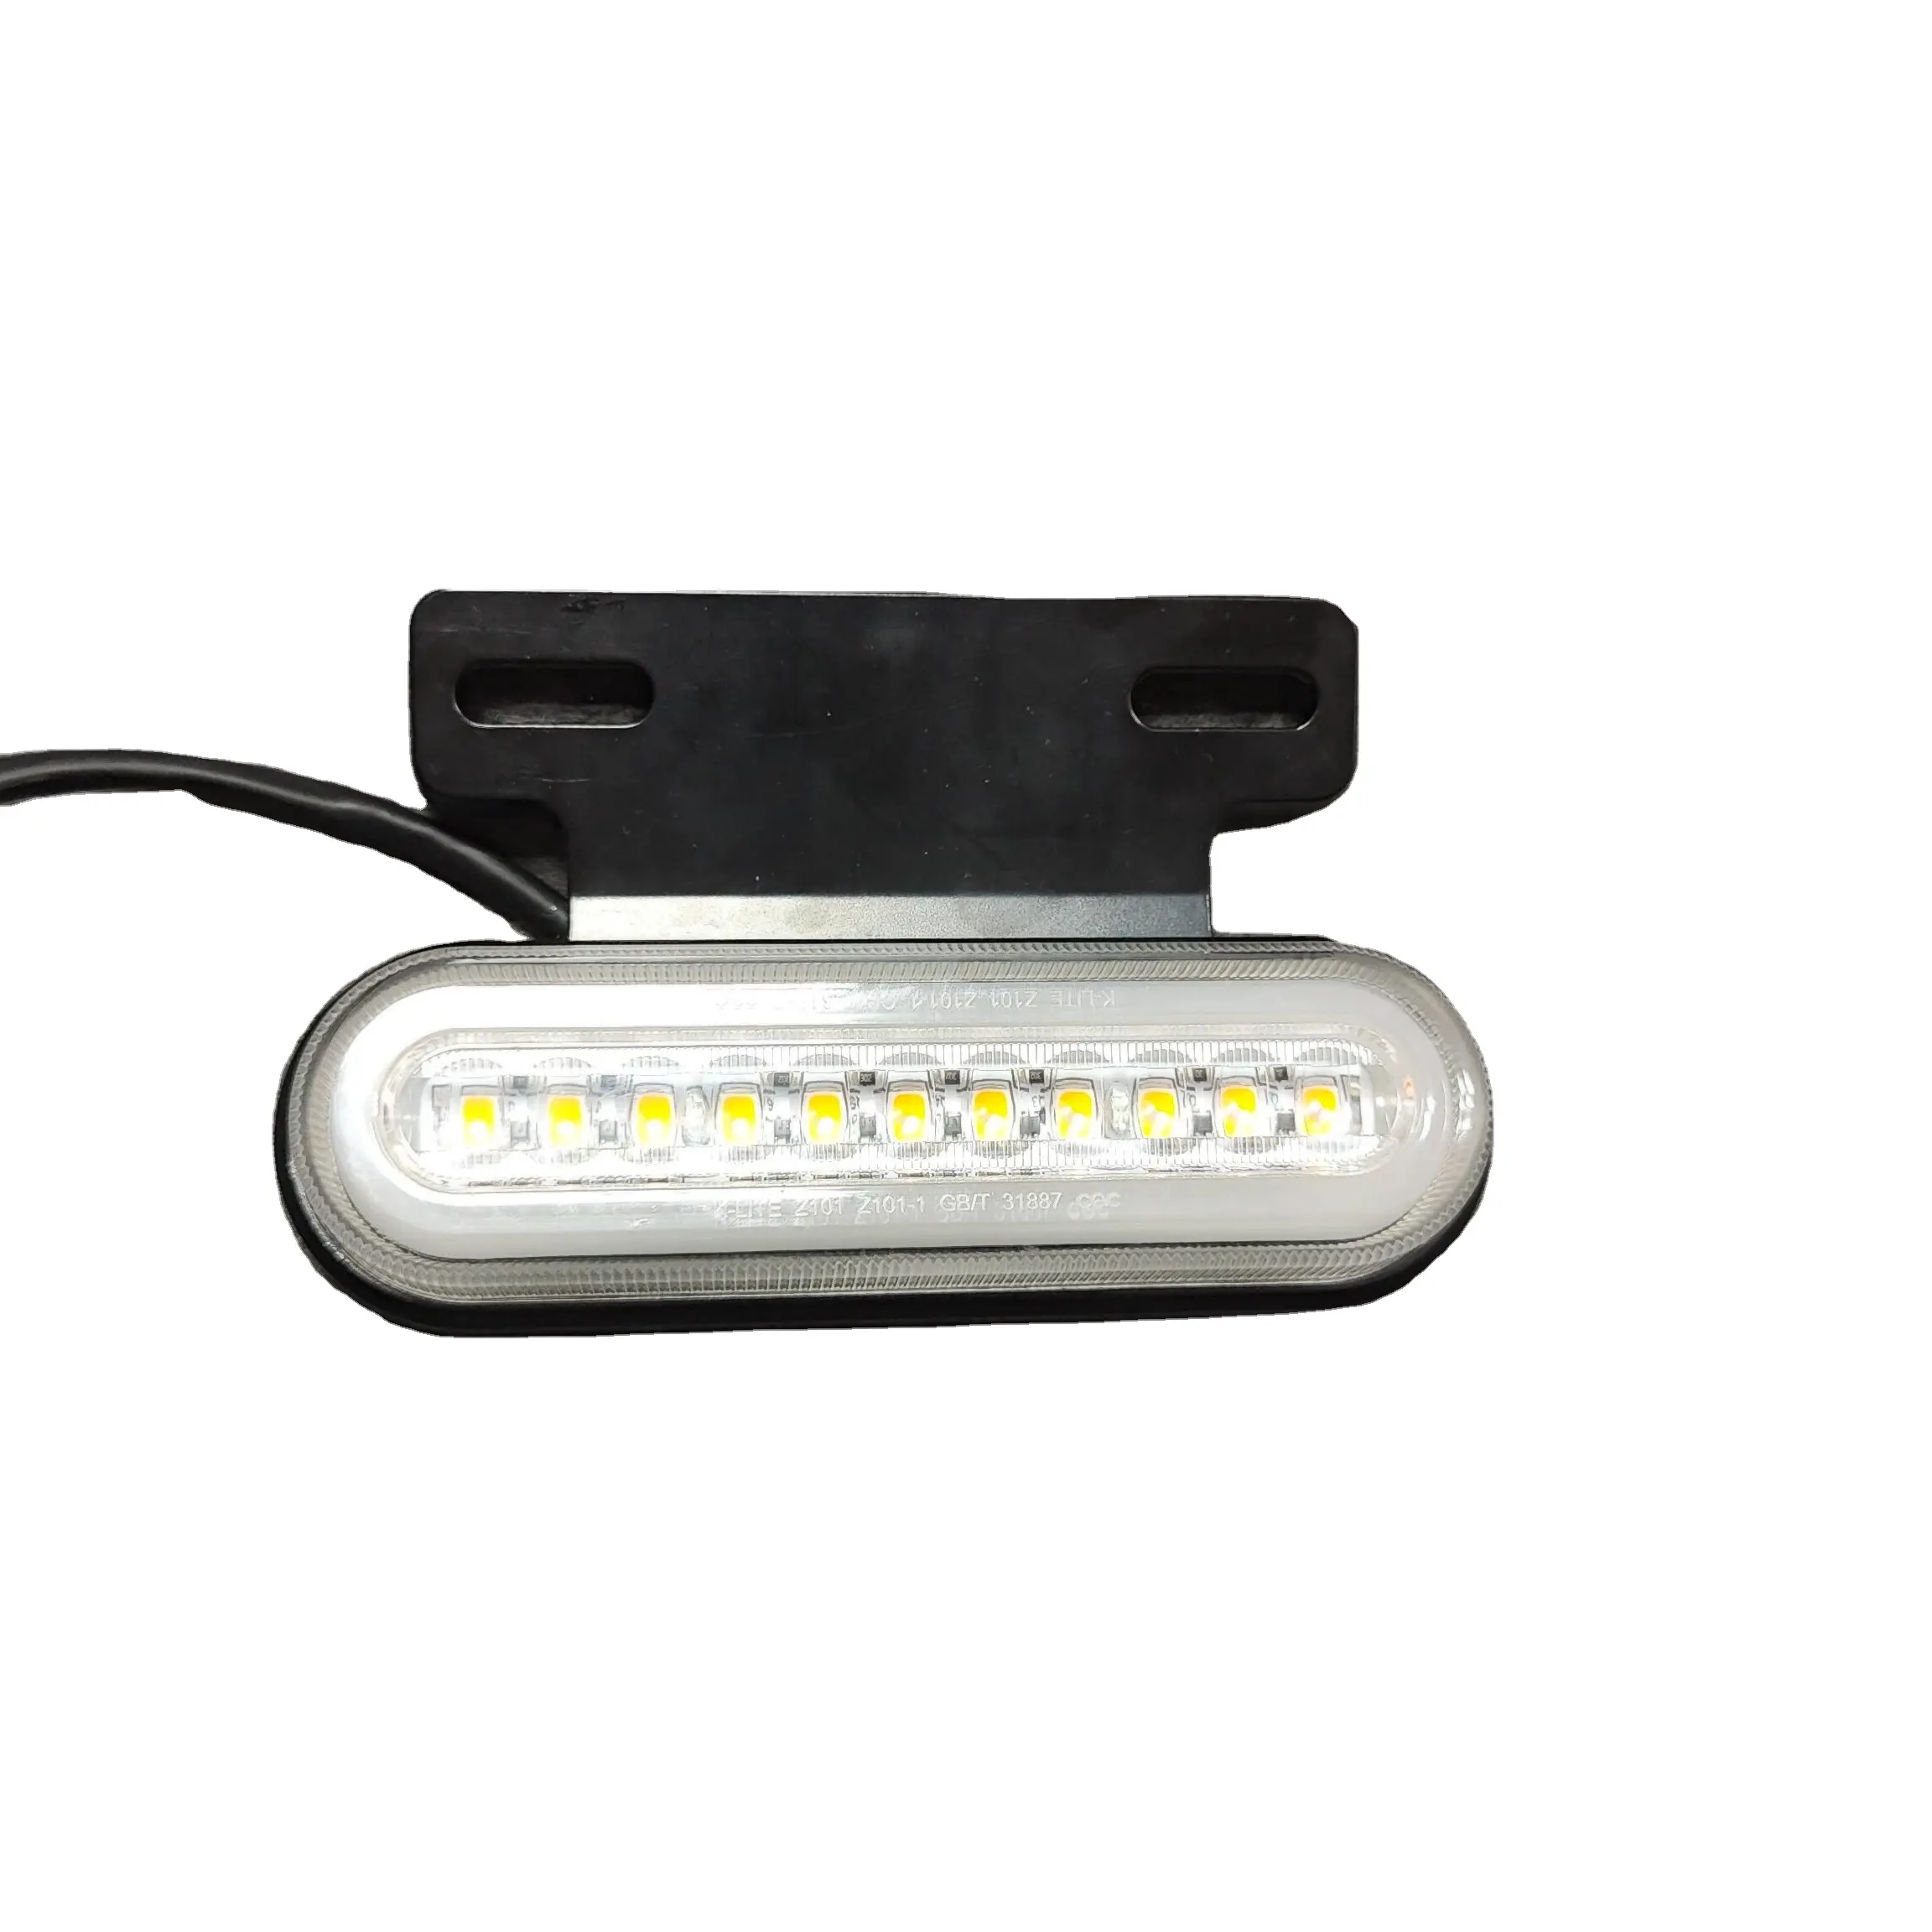 138.4*82.7*25.6mm LED Tail Light Brake Lamp Turning Signal Light For Motorcycles Trucks Of LZ101